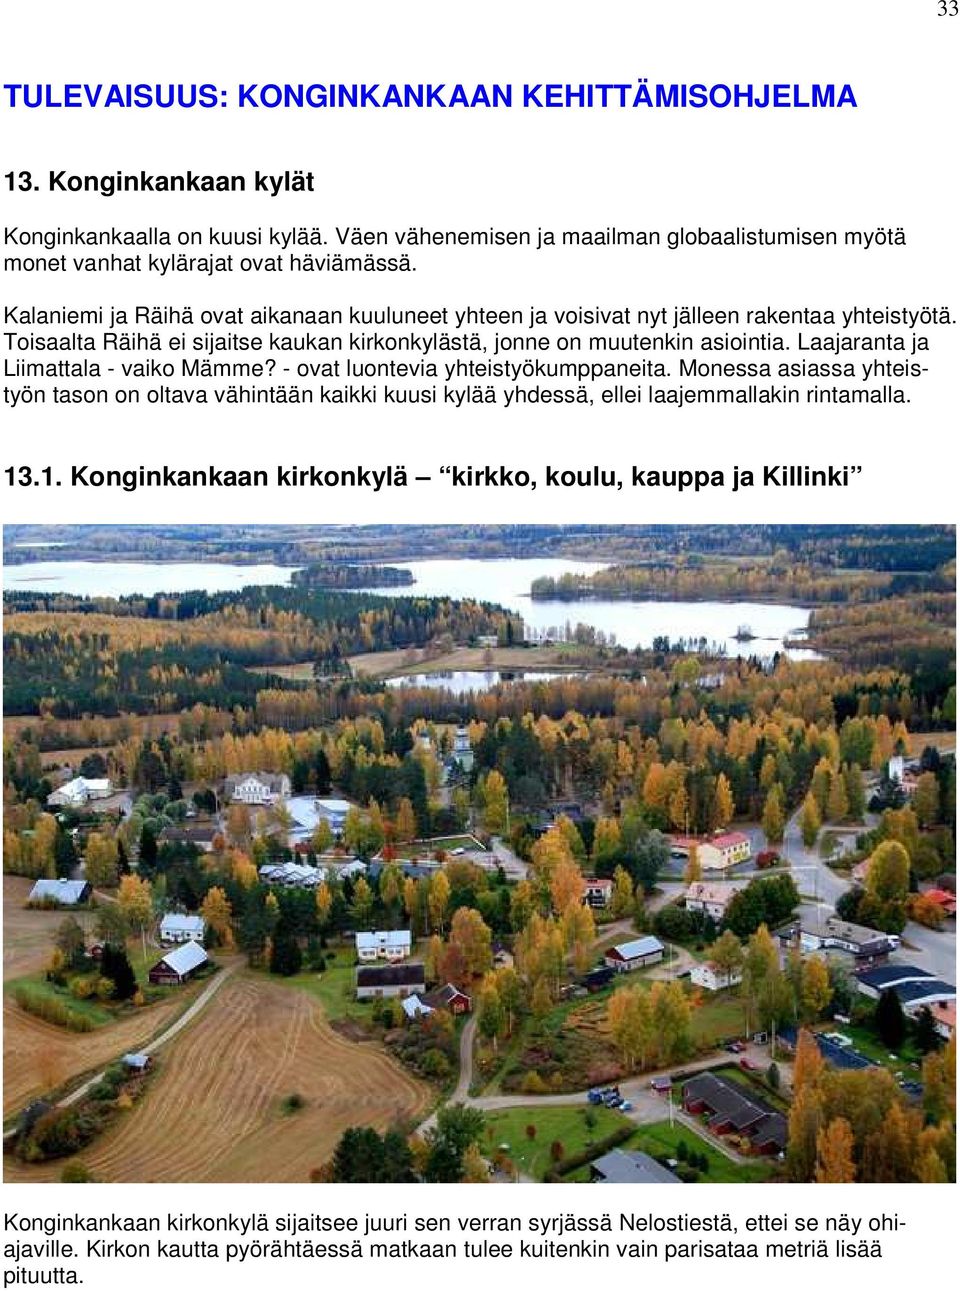 Laajaranta ja Liimattala - vaiko Mämme? - ovat luontevia yhteistyökumppaneita. Monessa asiassa yhteistyön tason on oltava vähintään kaikki kuusi kylää yhdessä, ellei laajemmallakin rintamalla. 13